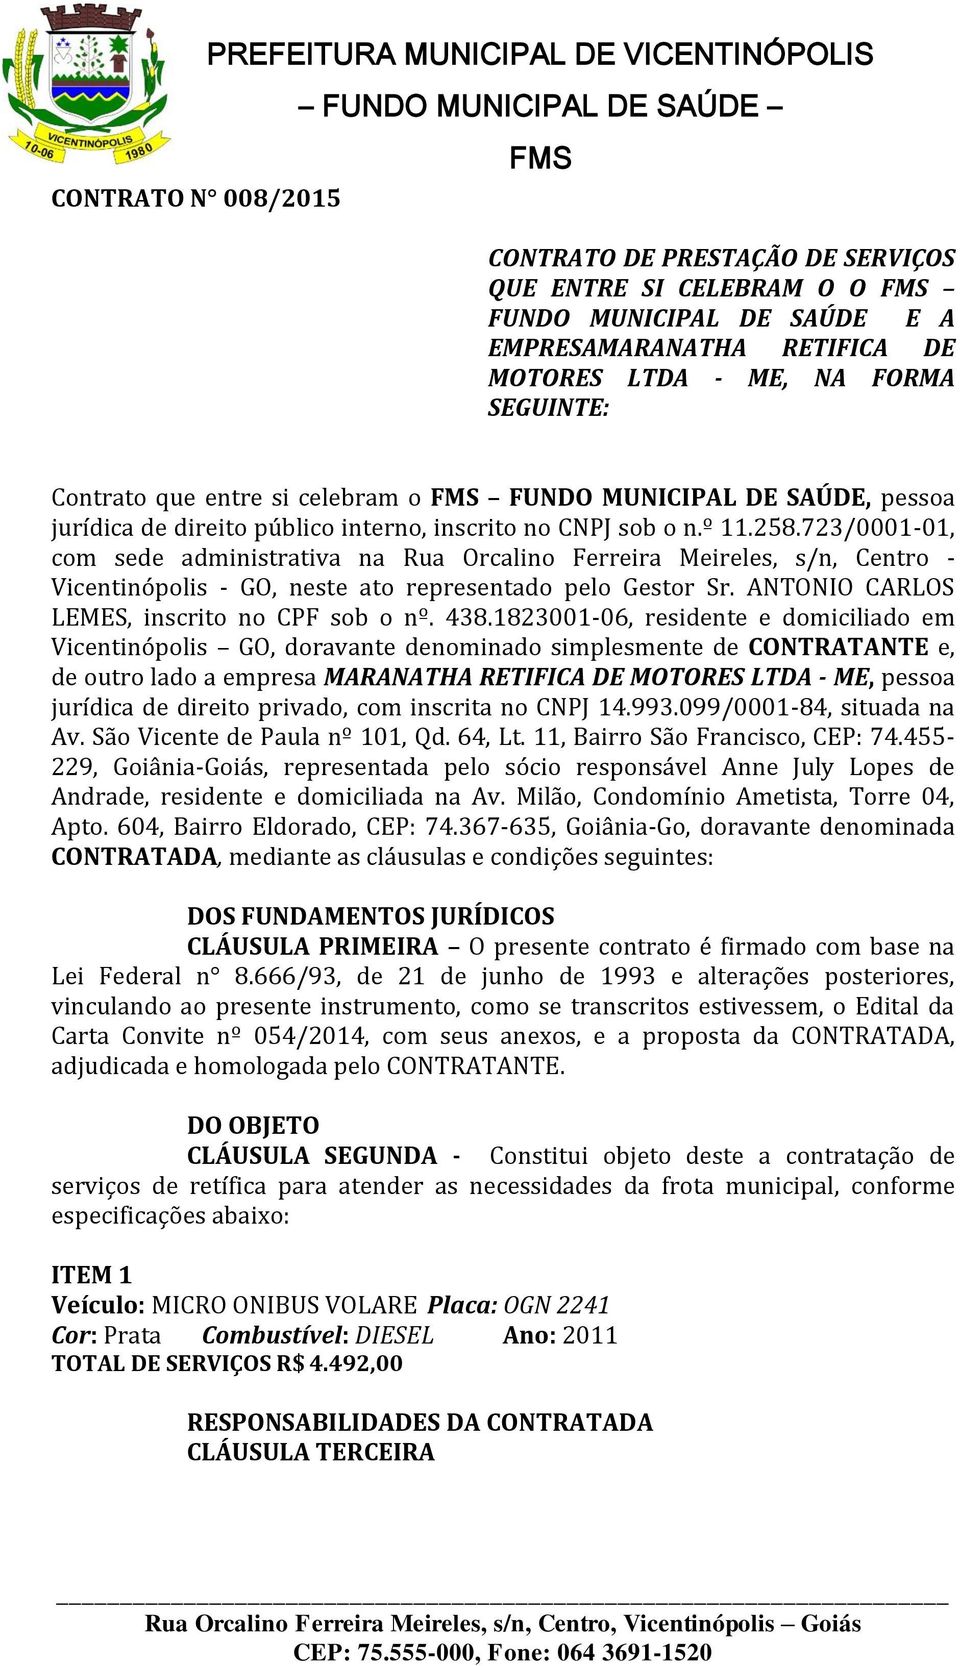 723/0001-01, com sede administrativa na Rua Orcalino Ferreira Meireles, s/n, Centro - Vicentinópolis - GO, neste ato representado pelo Gestor Sr. ANTONIO CARLOS LEMES, inscrito no CPF sob o nº. 438.